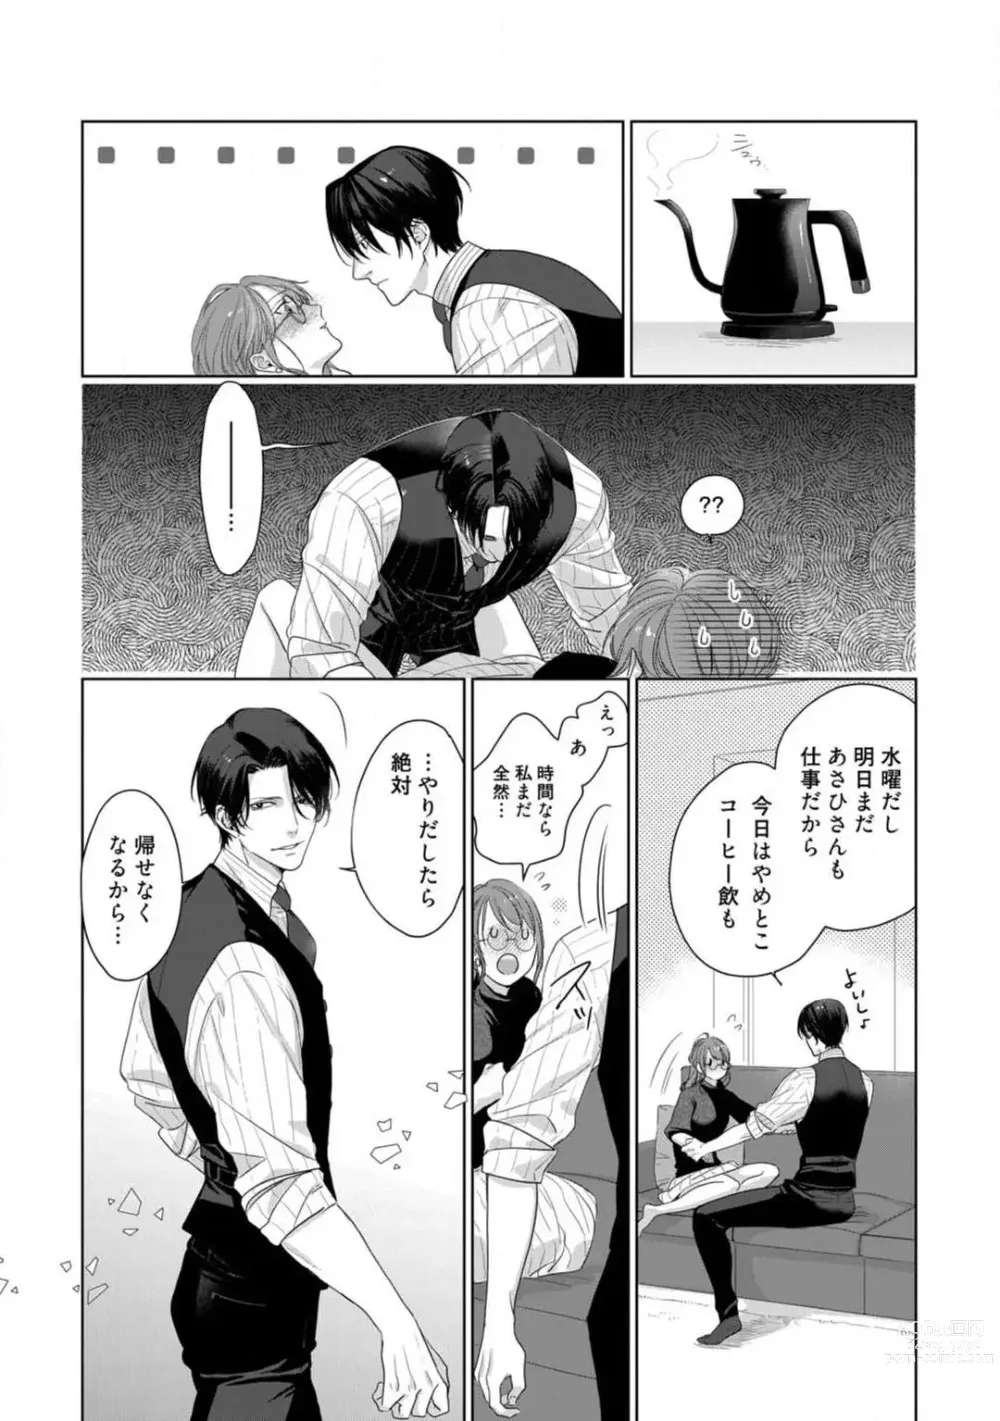 Page 115 of manga Anata no Koisuru Kiraina Watashi~Chp.1-4